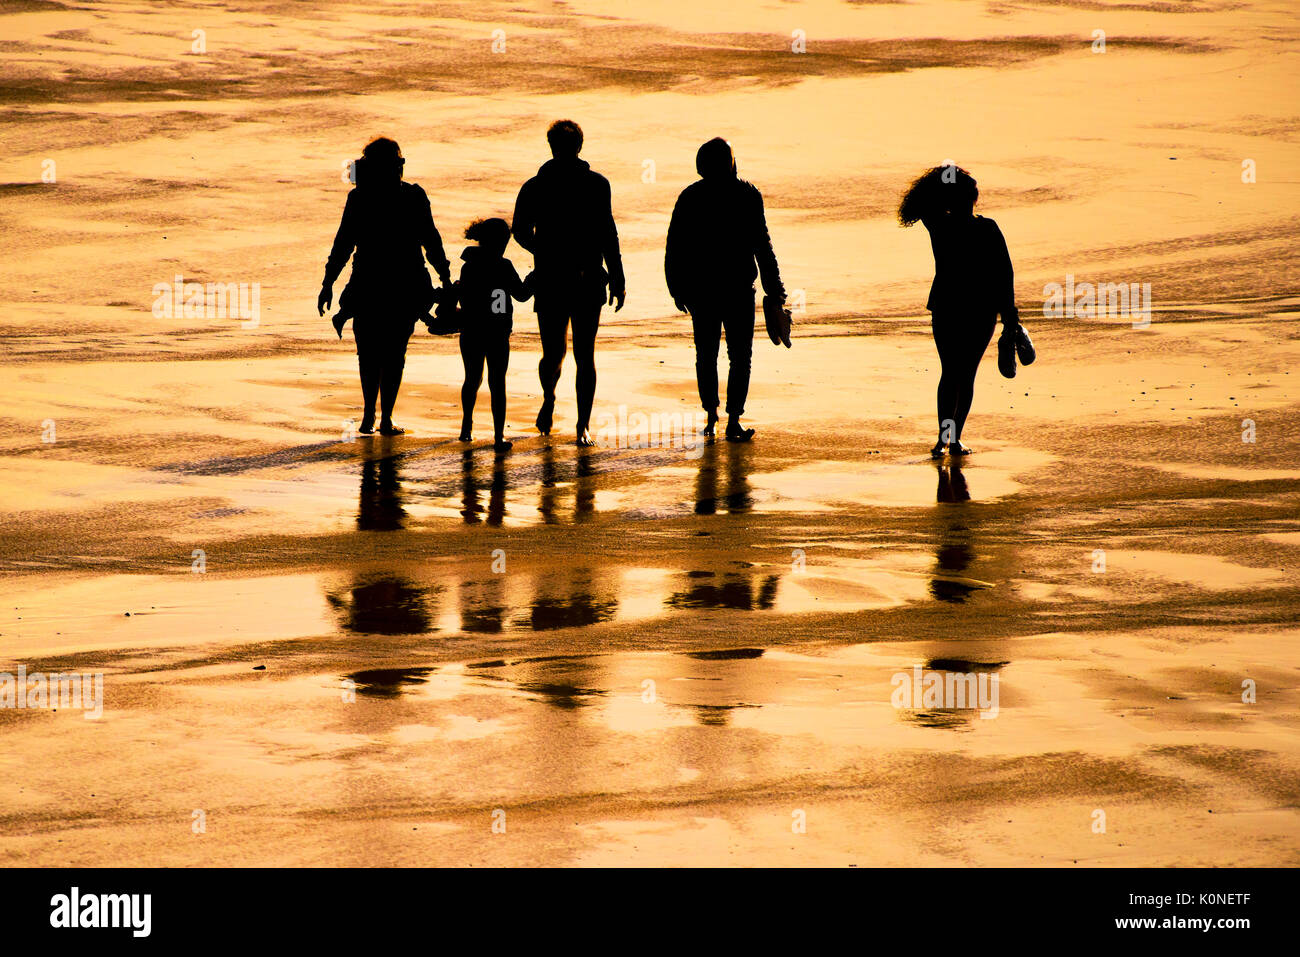 La silhouette di una famiglia di vacanzieri a camminare su una spiaggia al tramonto. Foto Stock